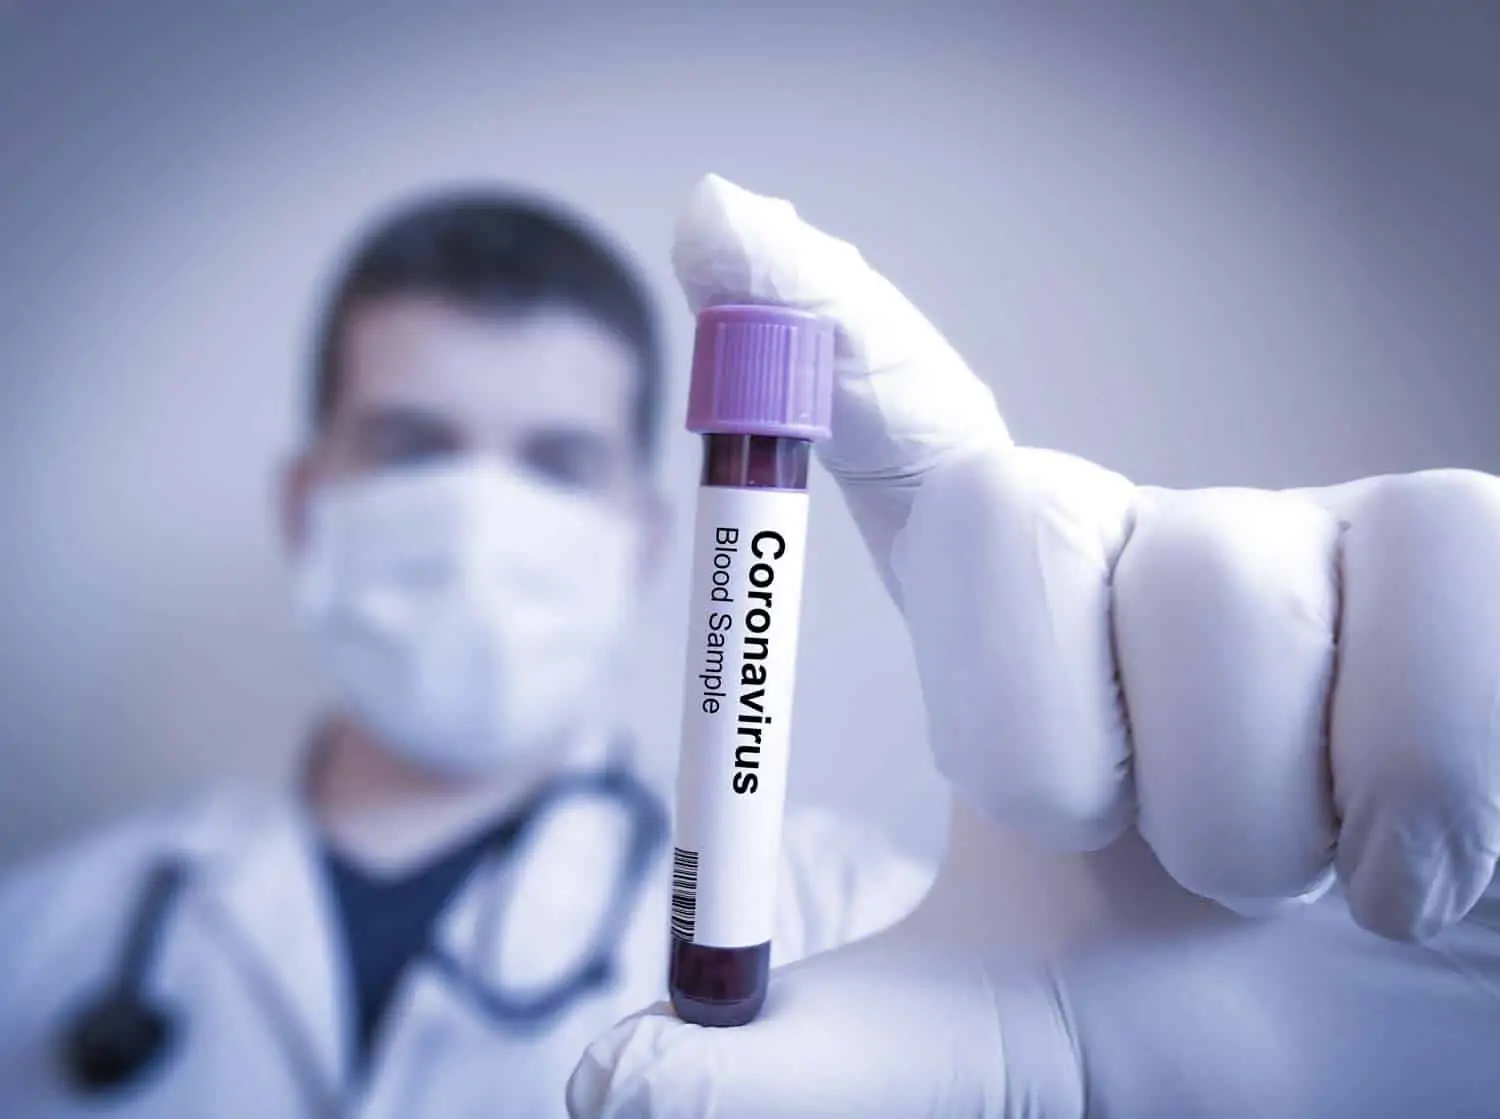 cuba confirma 5 nuevos casos de coronavirus